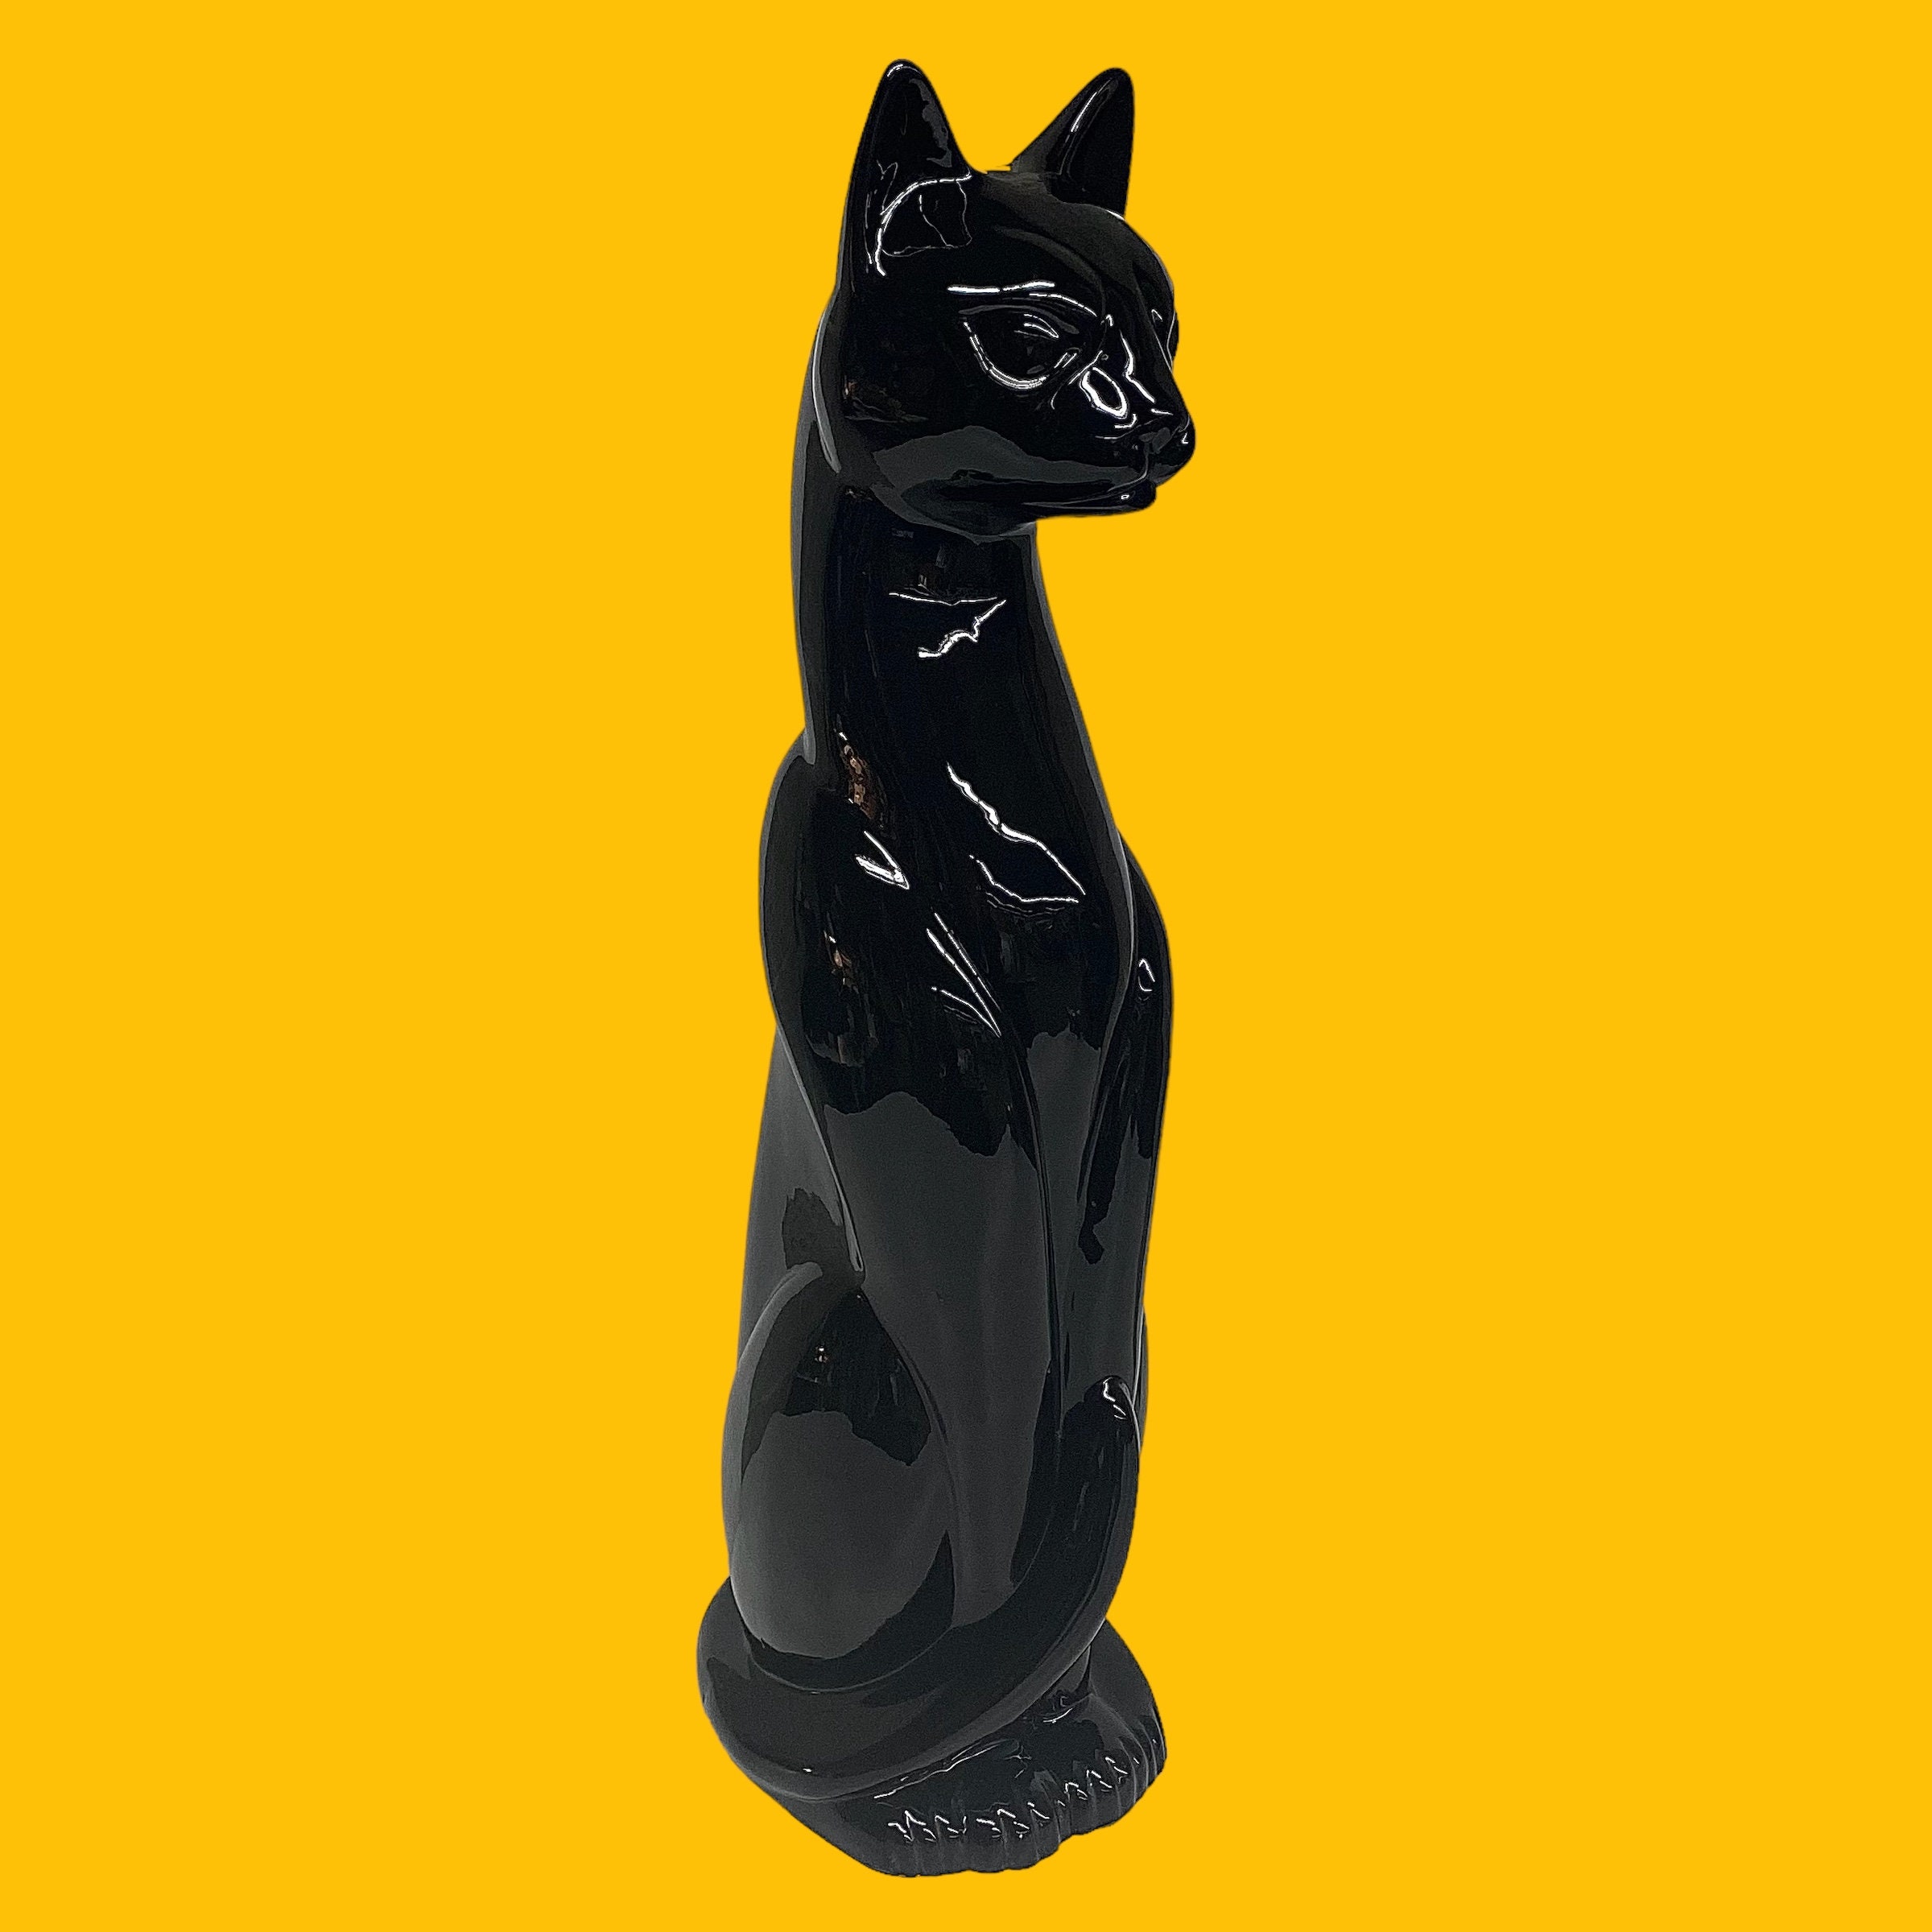 Super spécial 10 paquet de black cat - Messieurs pétards